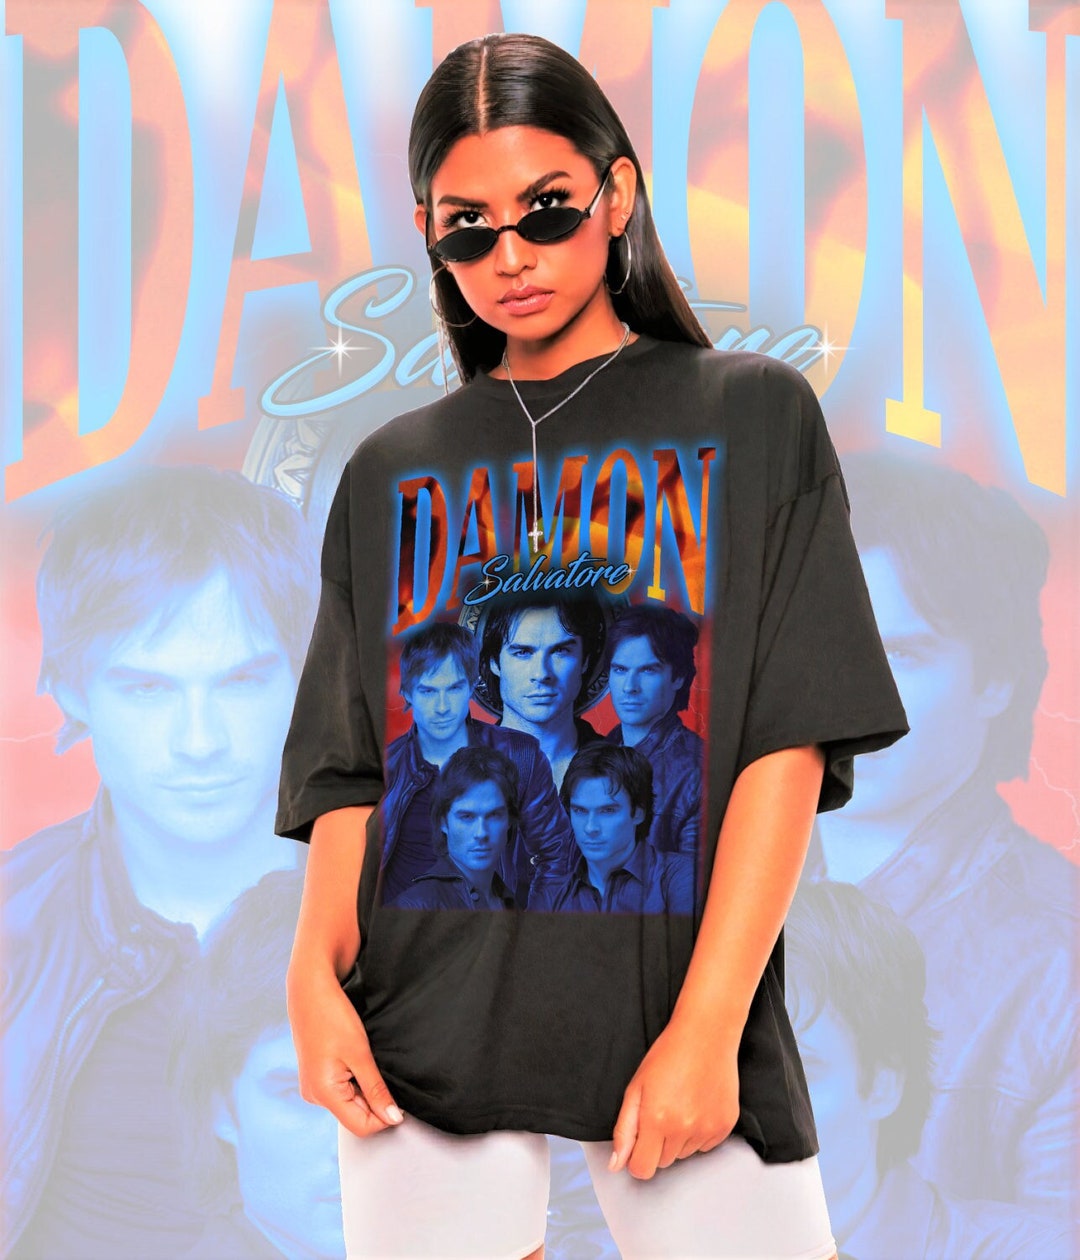 Retro Damon Salvatore Shirt-damon Salvatore Sweatshirt,damon Salvatore ...